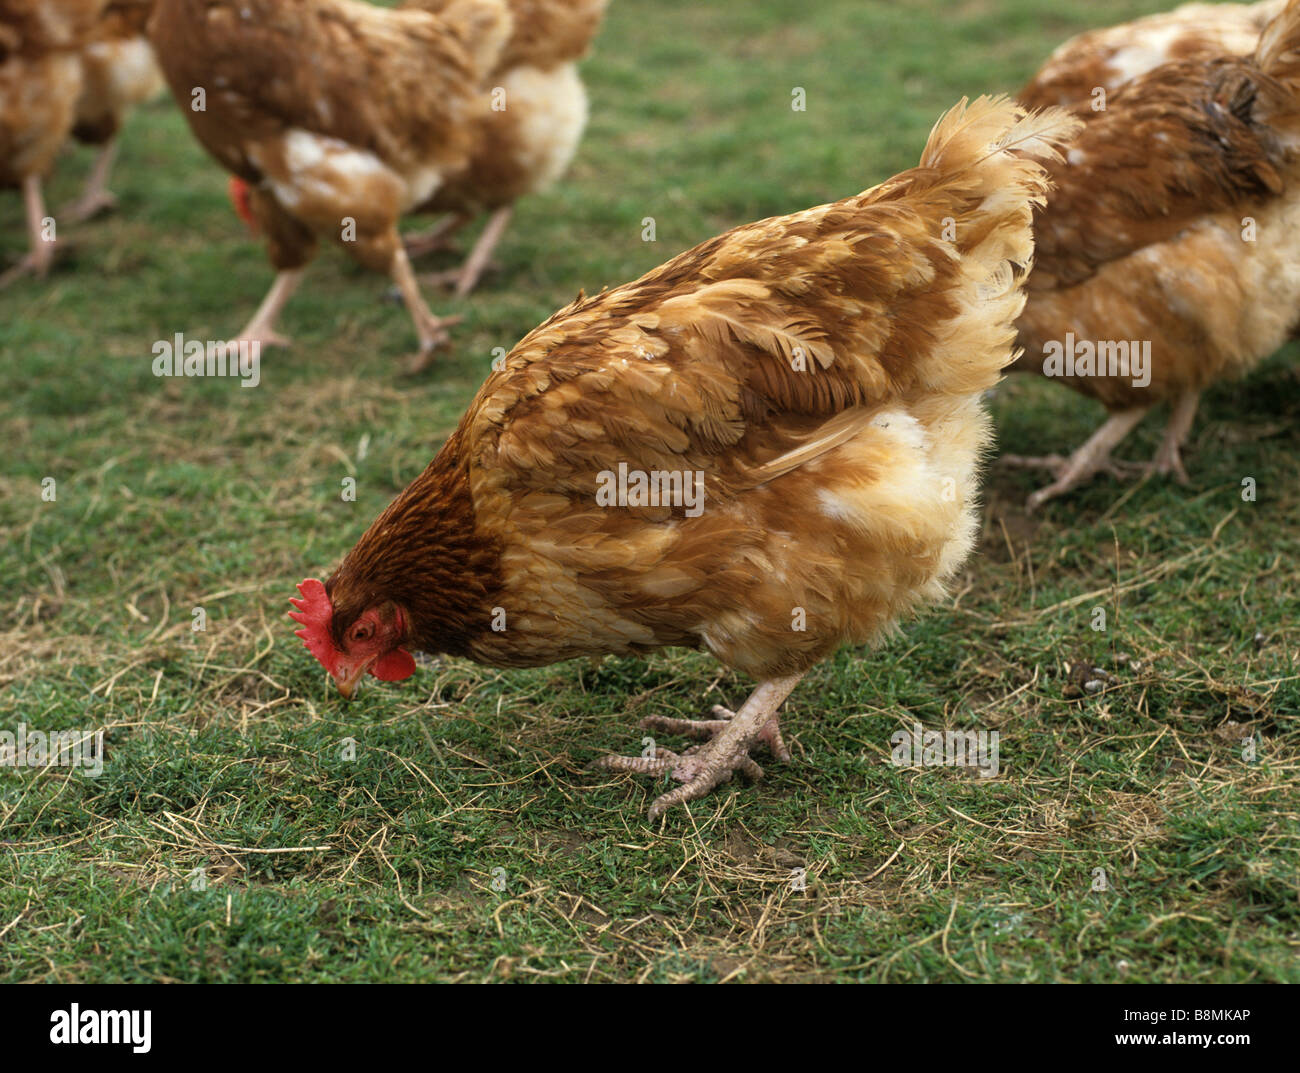 Intervalo libre comercial tendido en la hierba de pollo huevo grande unidad productora Foto de stock